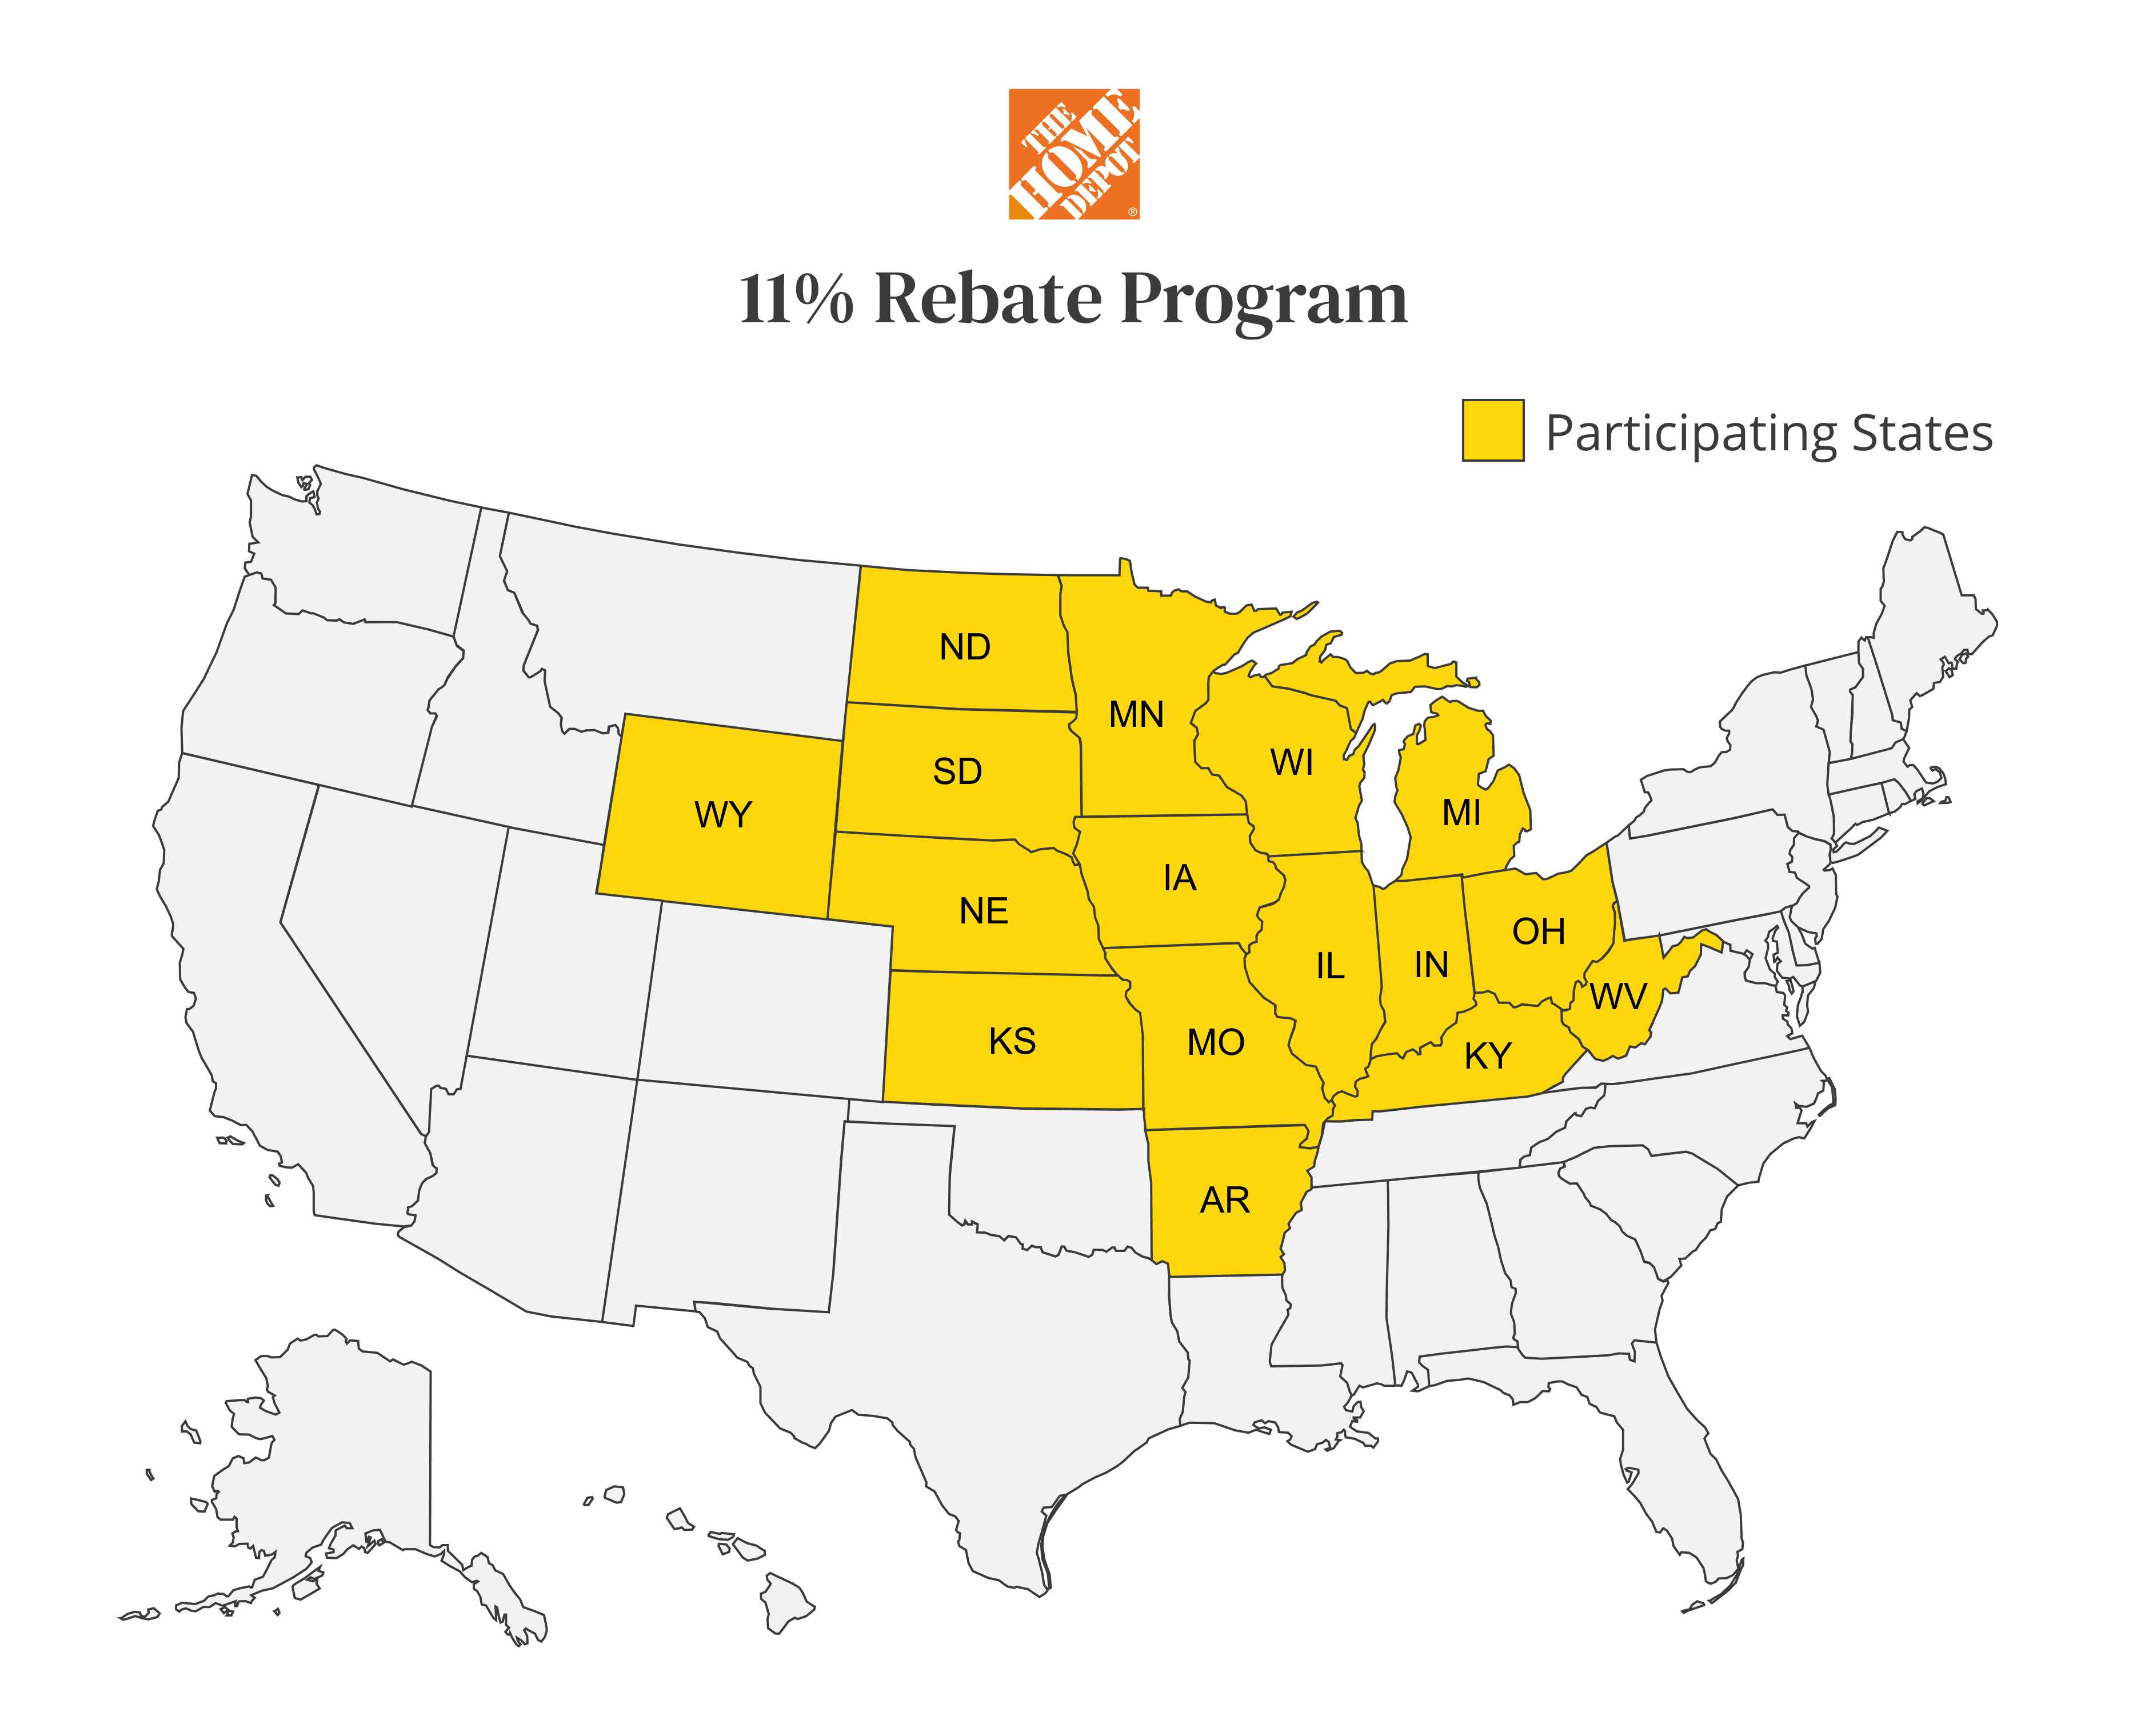 U.S. states that participate in the home depot 11% rebate program.